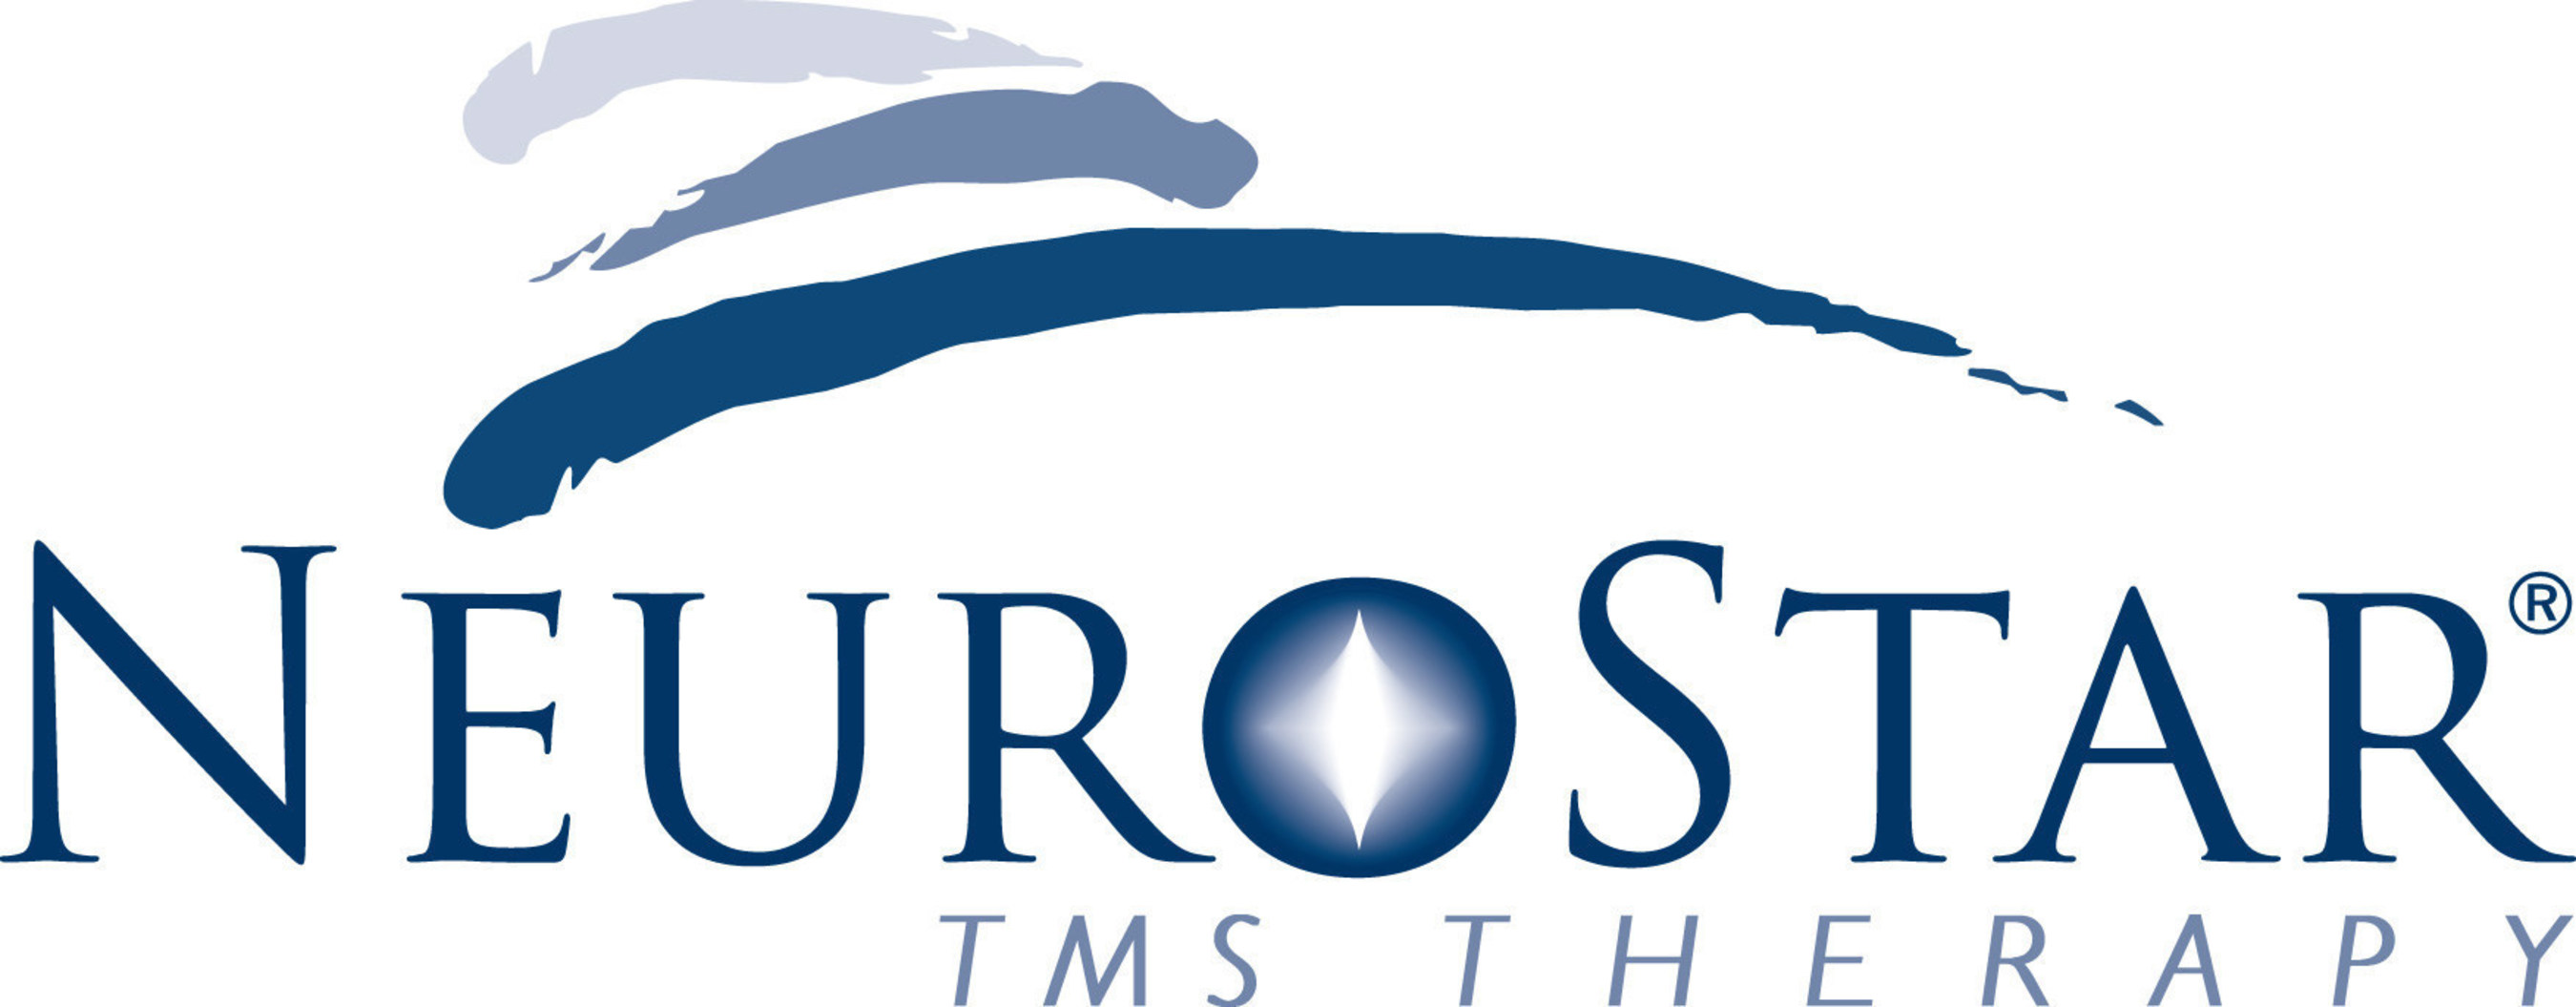 NeuroStar TMS Logo